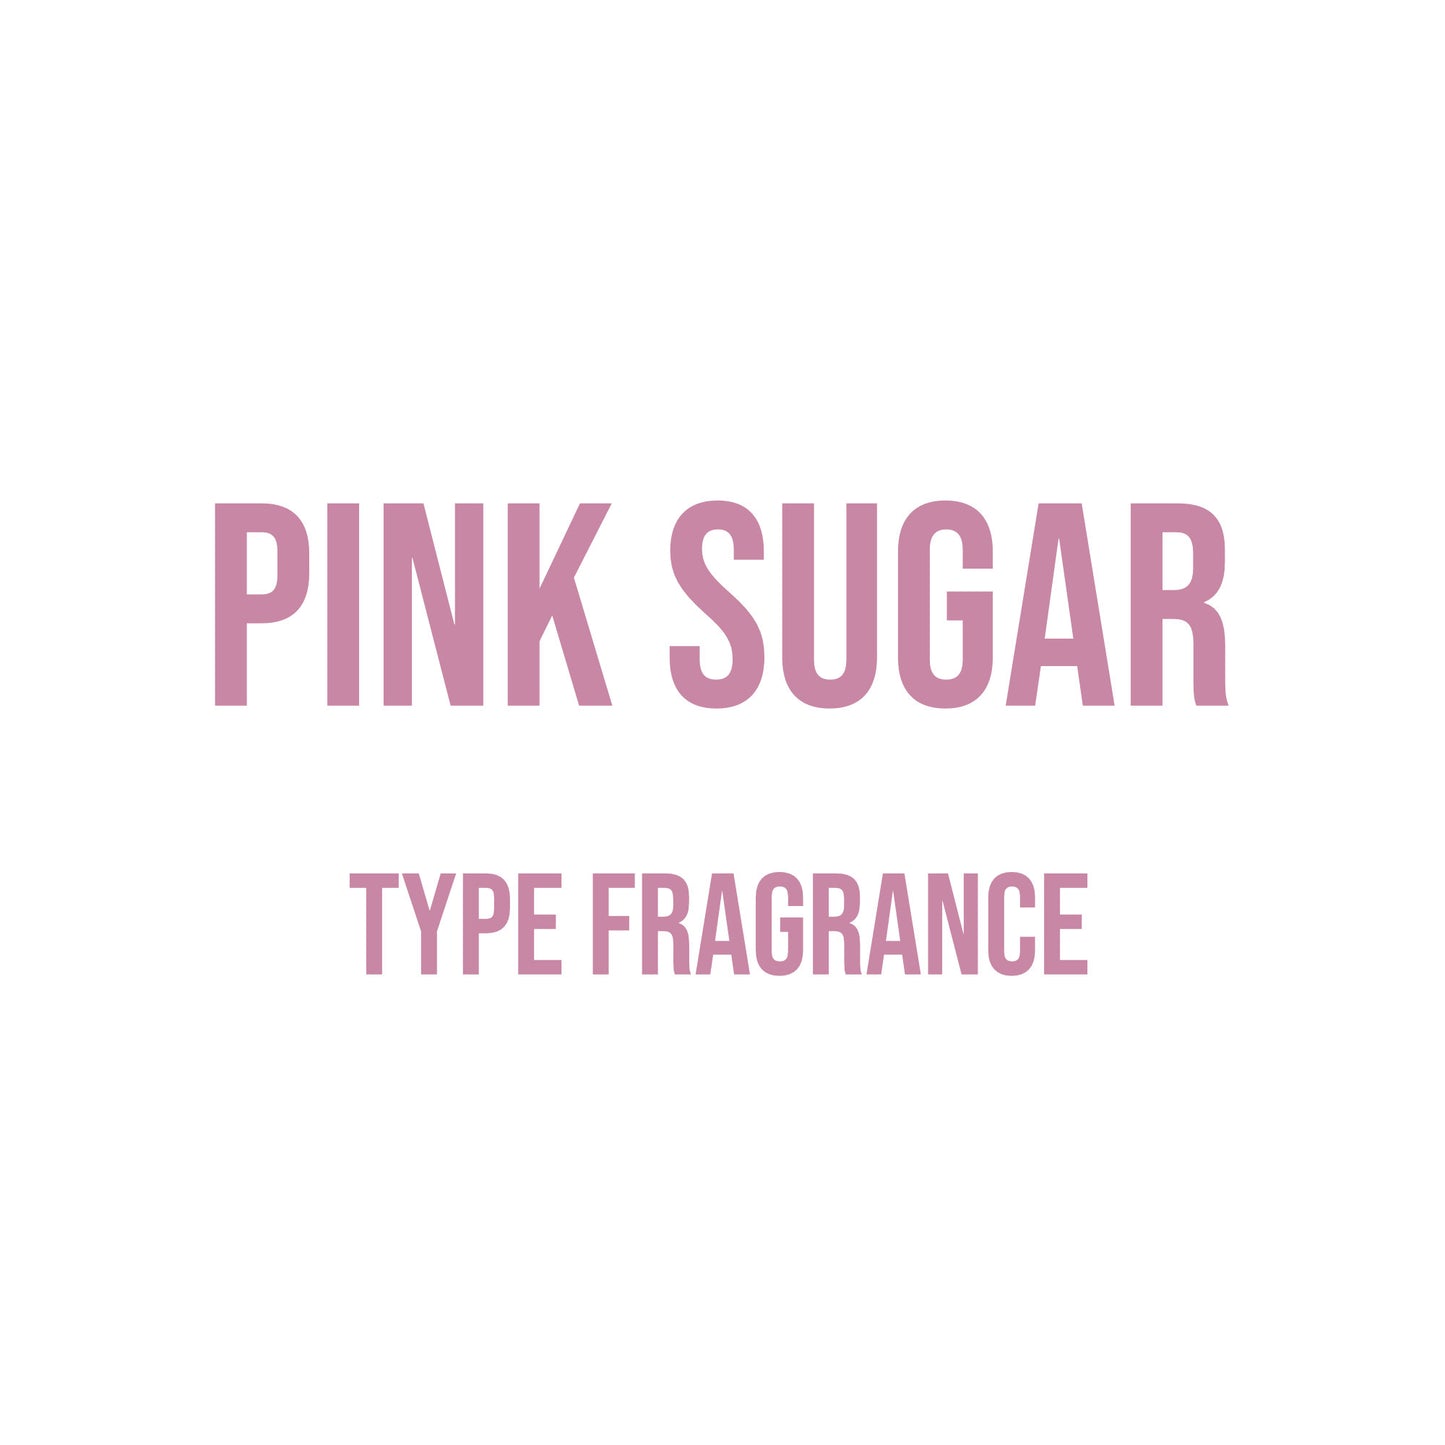 Pink Sugar Type Fragrance